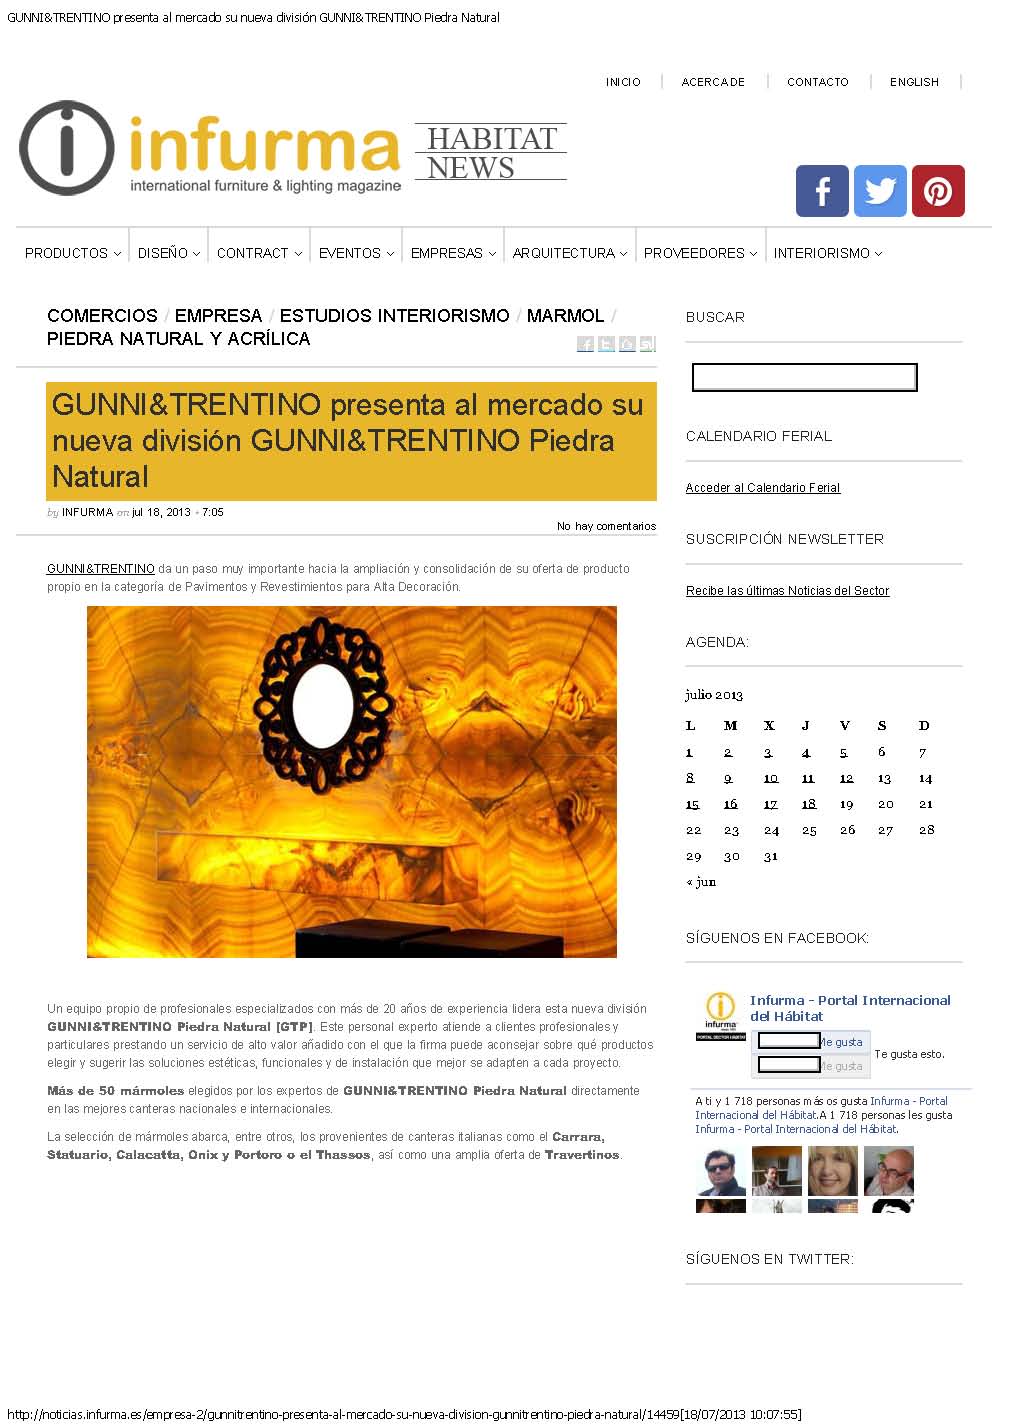 Infurma International Furniture Magazine 2013, Gunni &amp; Trentino